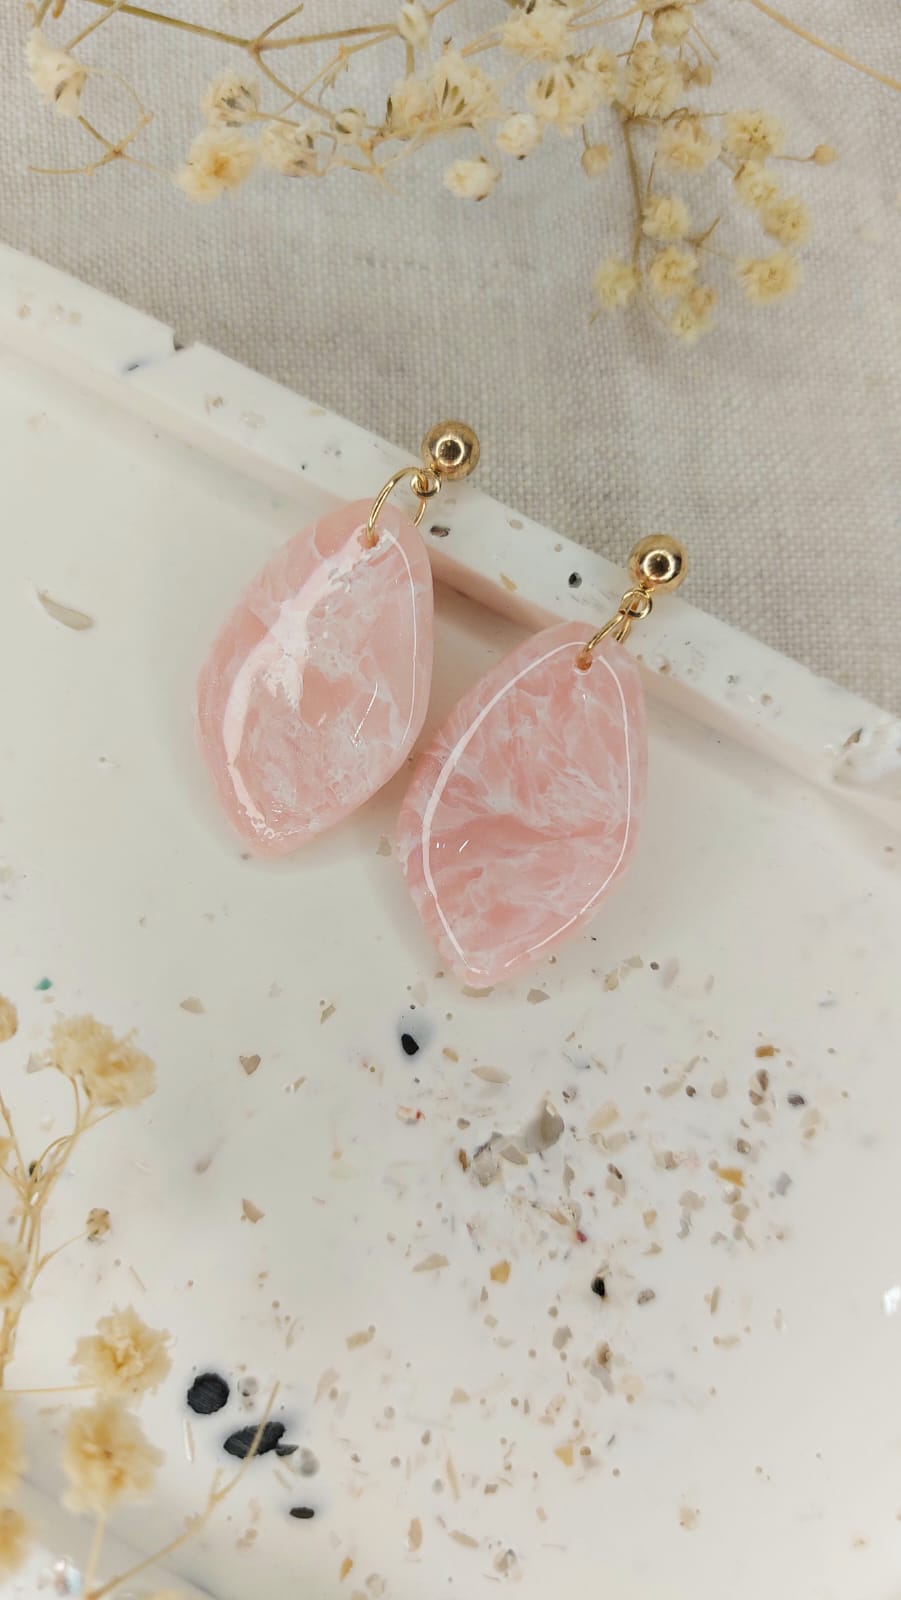 Kolczyki z glinki polimerowej, marmurki o różowym kolorze